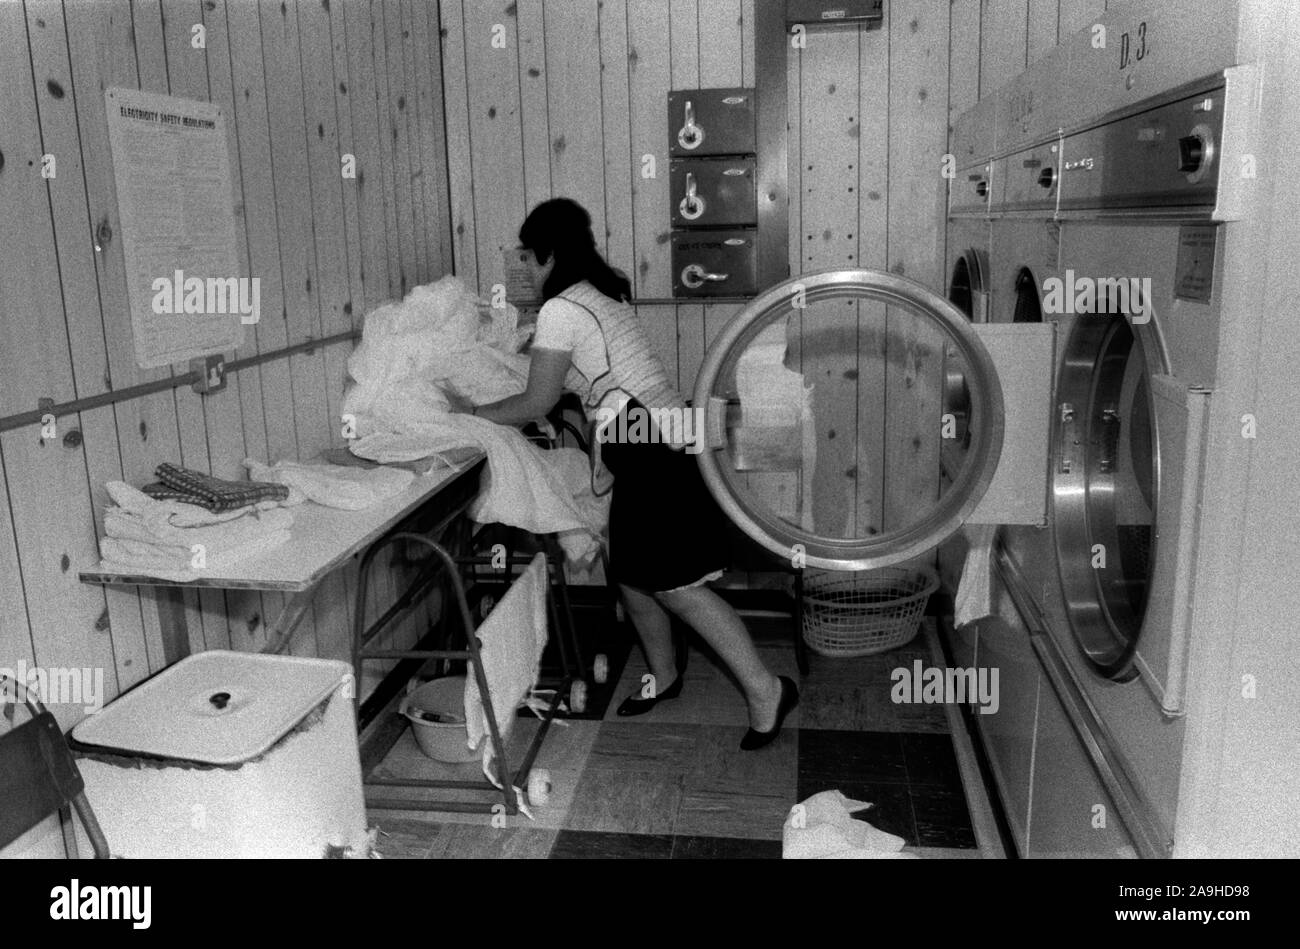 HM Gefängnis Styal Wilmslow Cheshire UK 1980s Frauengefängnis, weibliche Gefangene macht ihre Wäsche 1986. HOMER SYKES Stockfoto